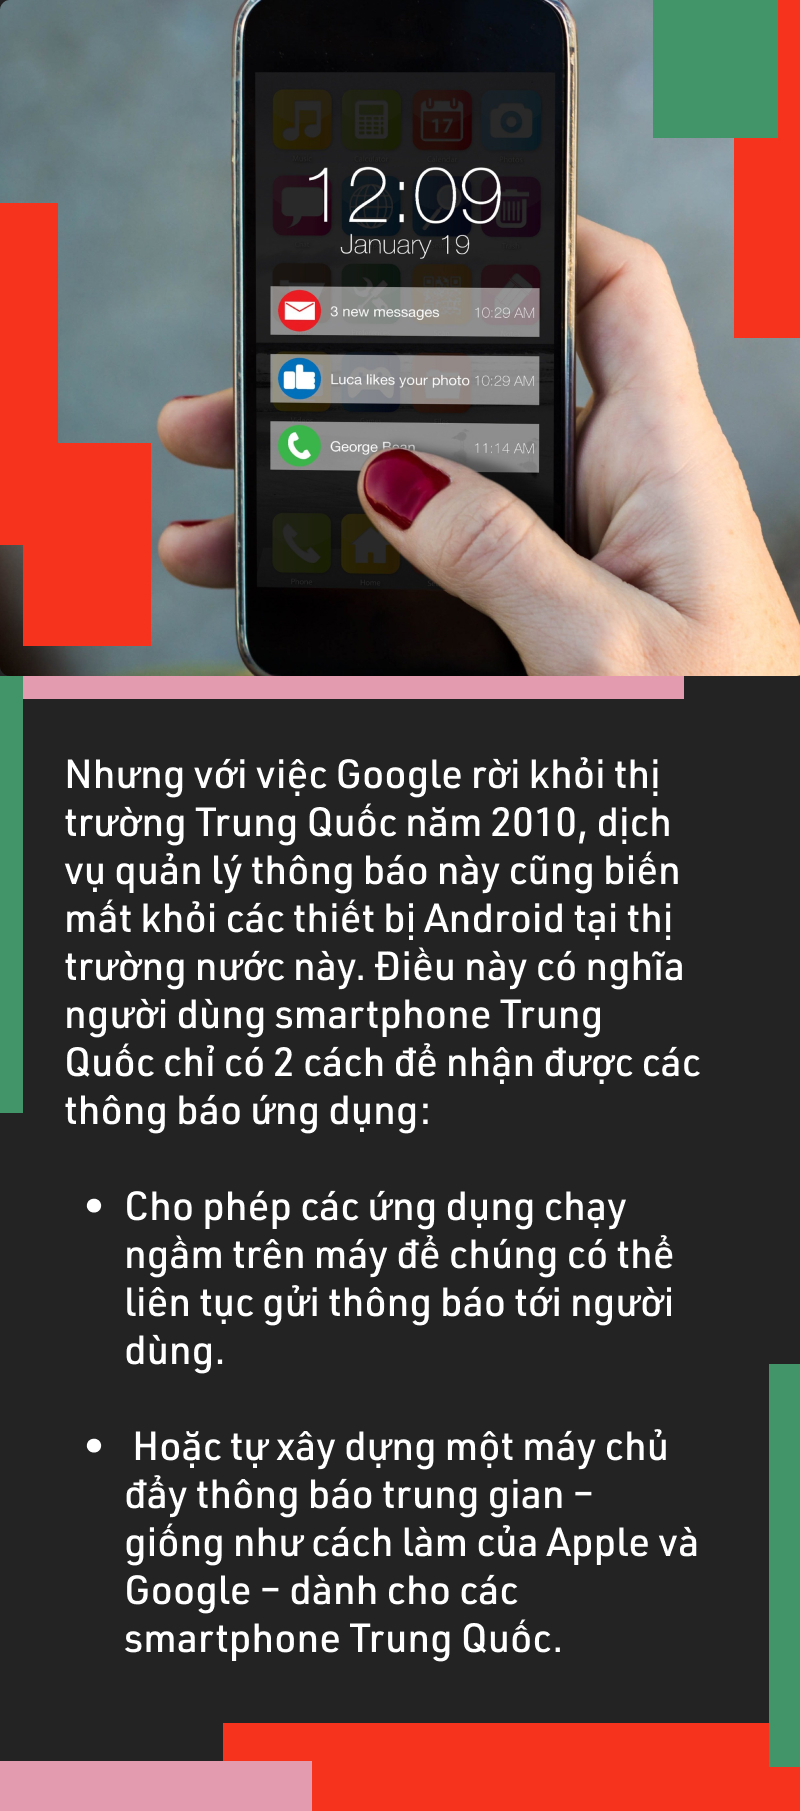 Sự thật đằng sau việc thông báo trên điện thoại Android làm hao pin - Ảnh 4.